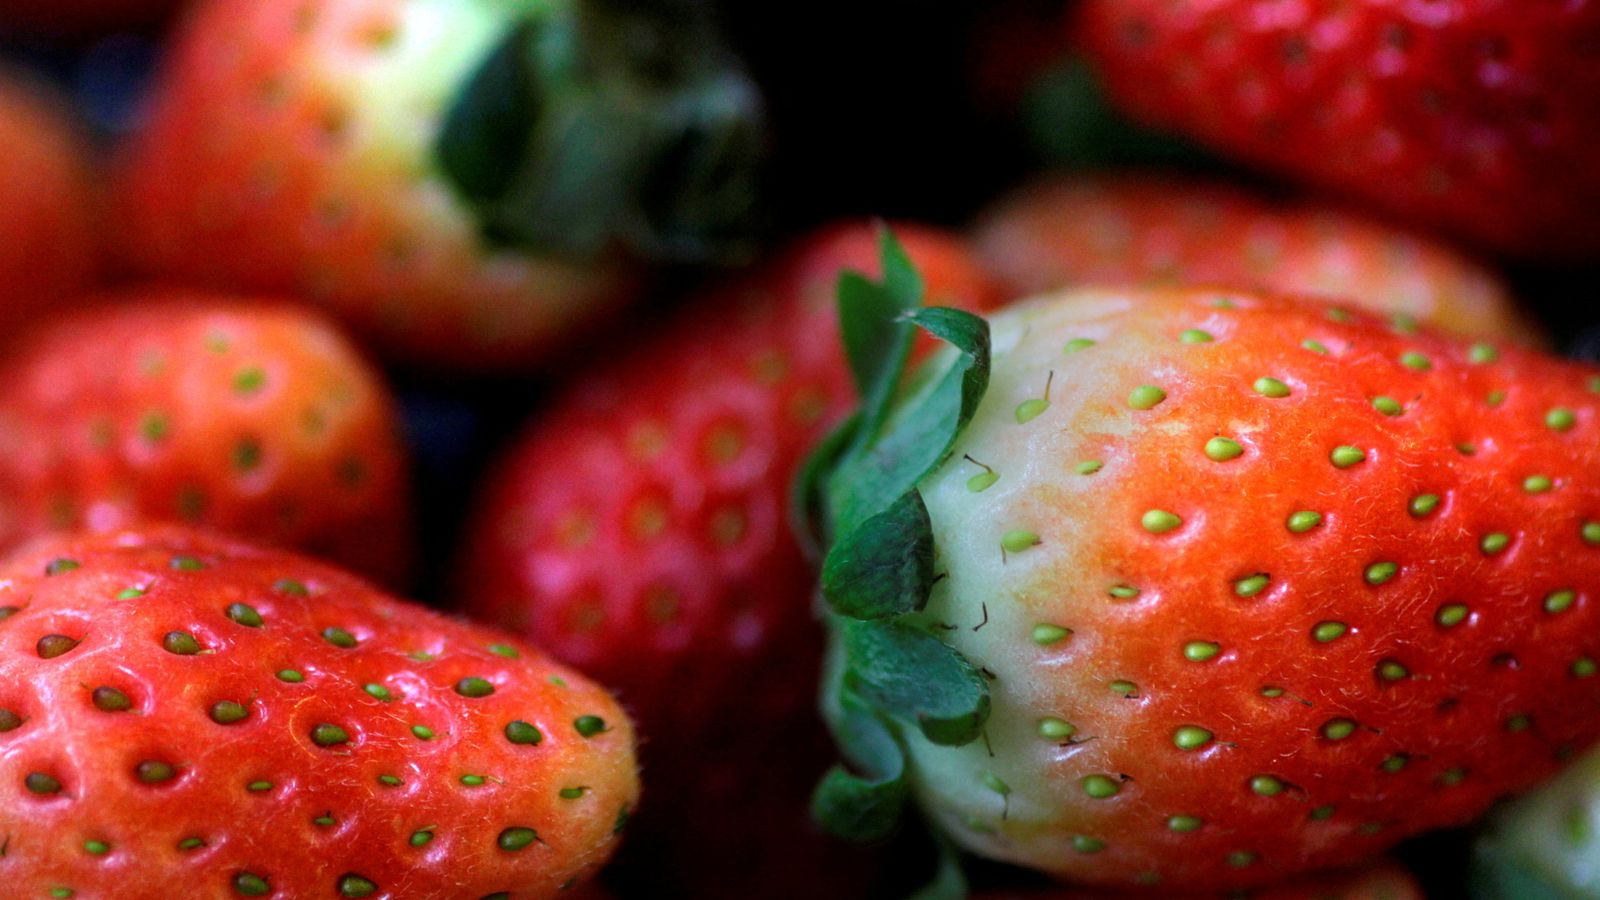 Les fraises peuvent être liées à une épidémie d’hépatite aux États-Unis et au Canada |  Nouvelles du monde